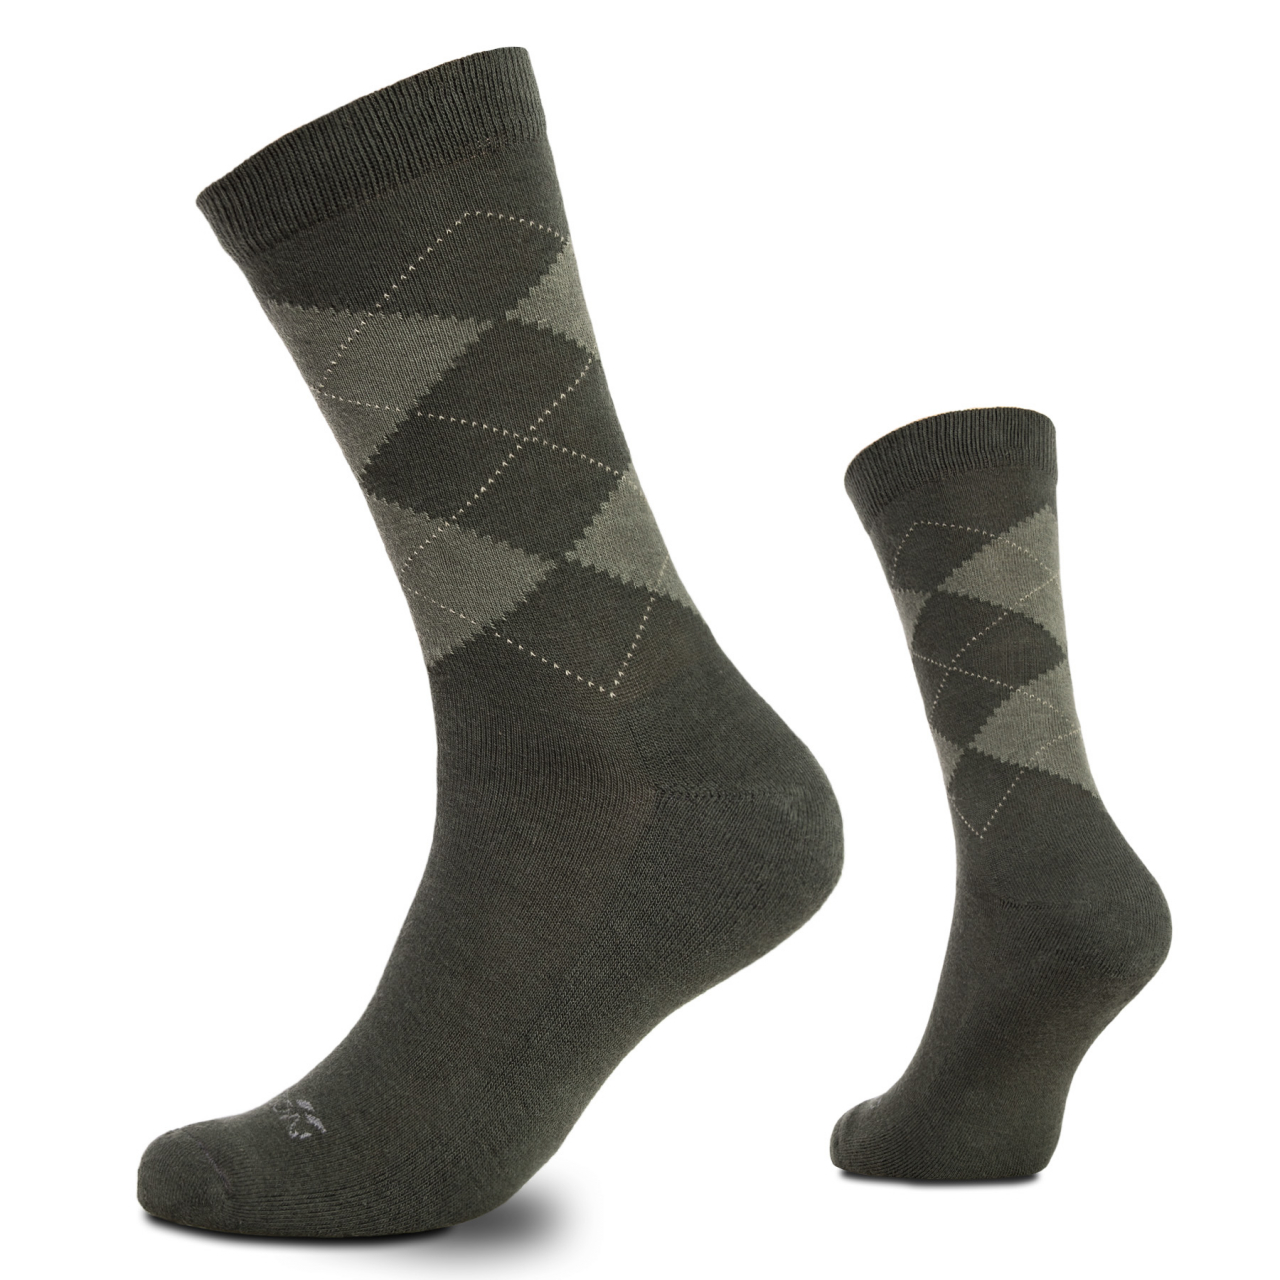 Ponožky Pentagon Phineas - olivové, 45-47